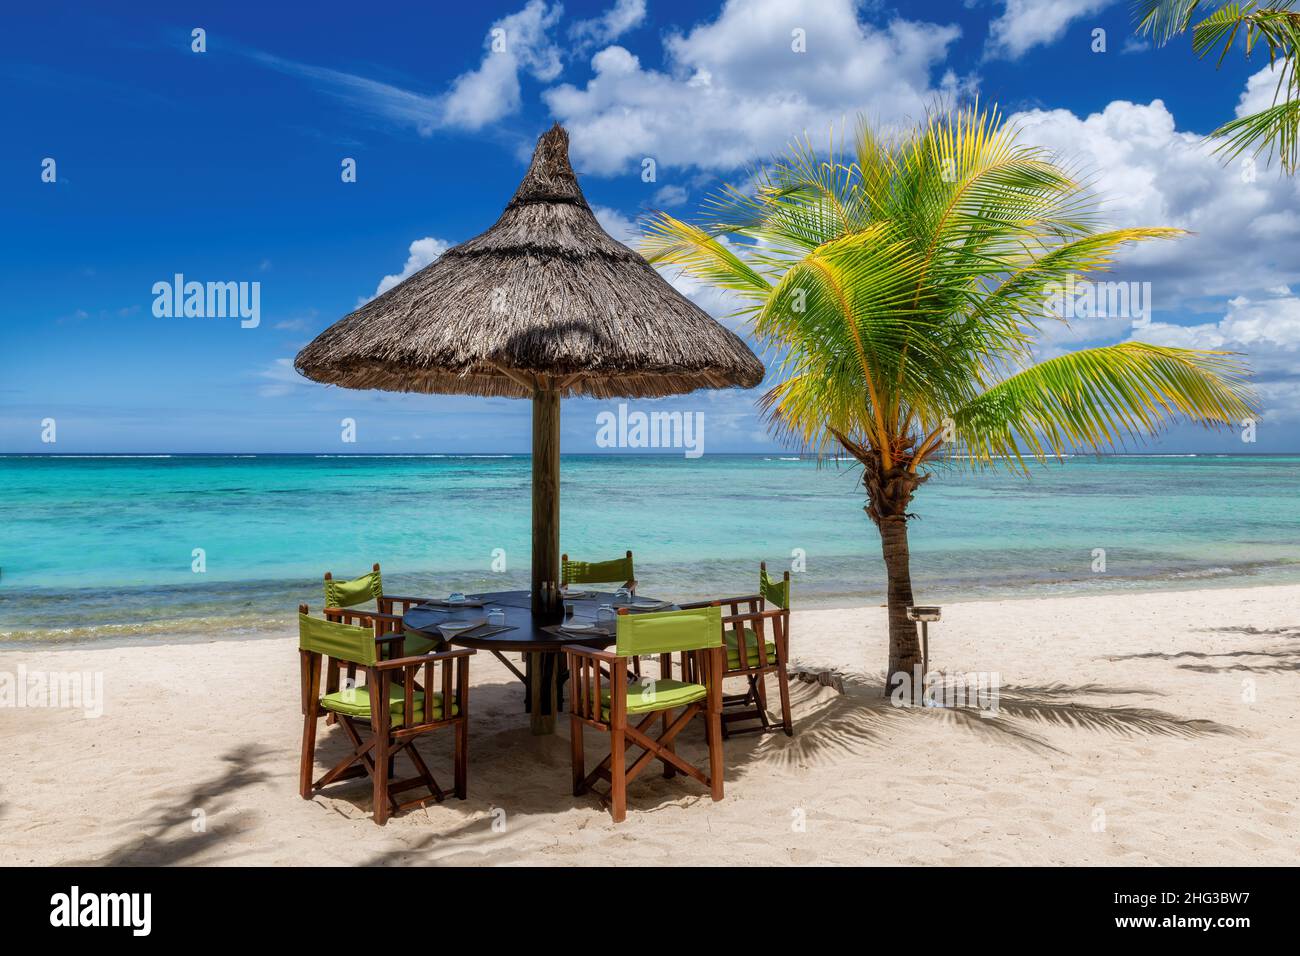 Beach restaurant on sandy tropical beach Stock Photo